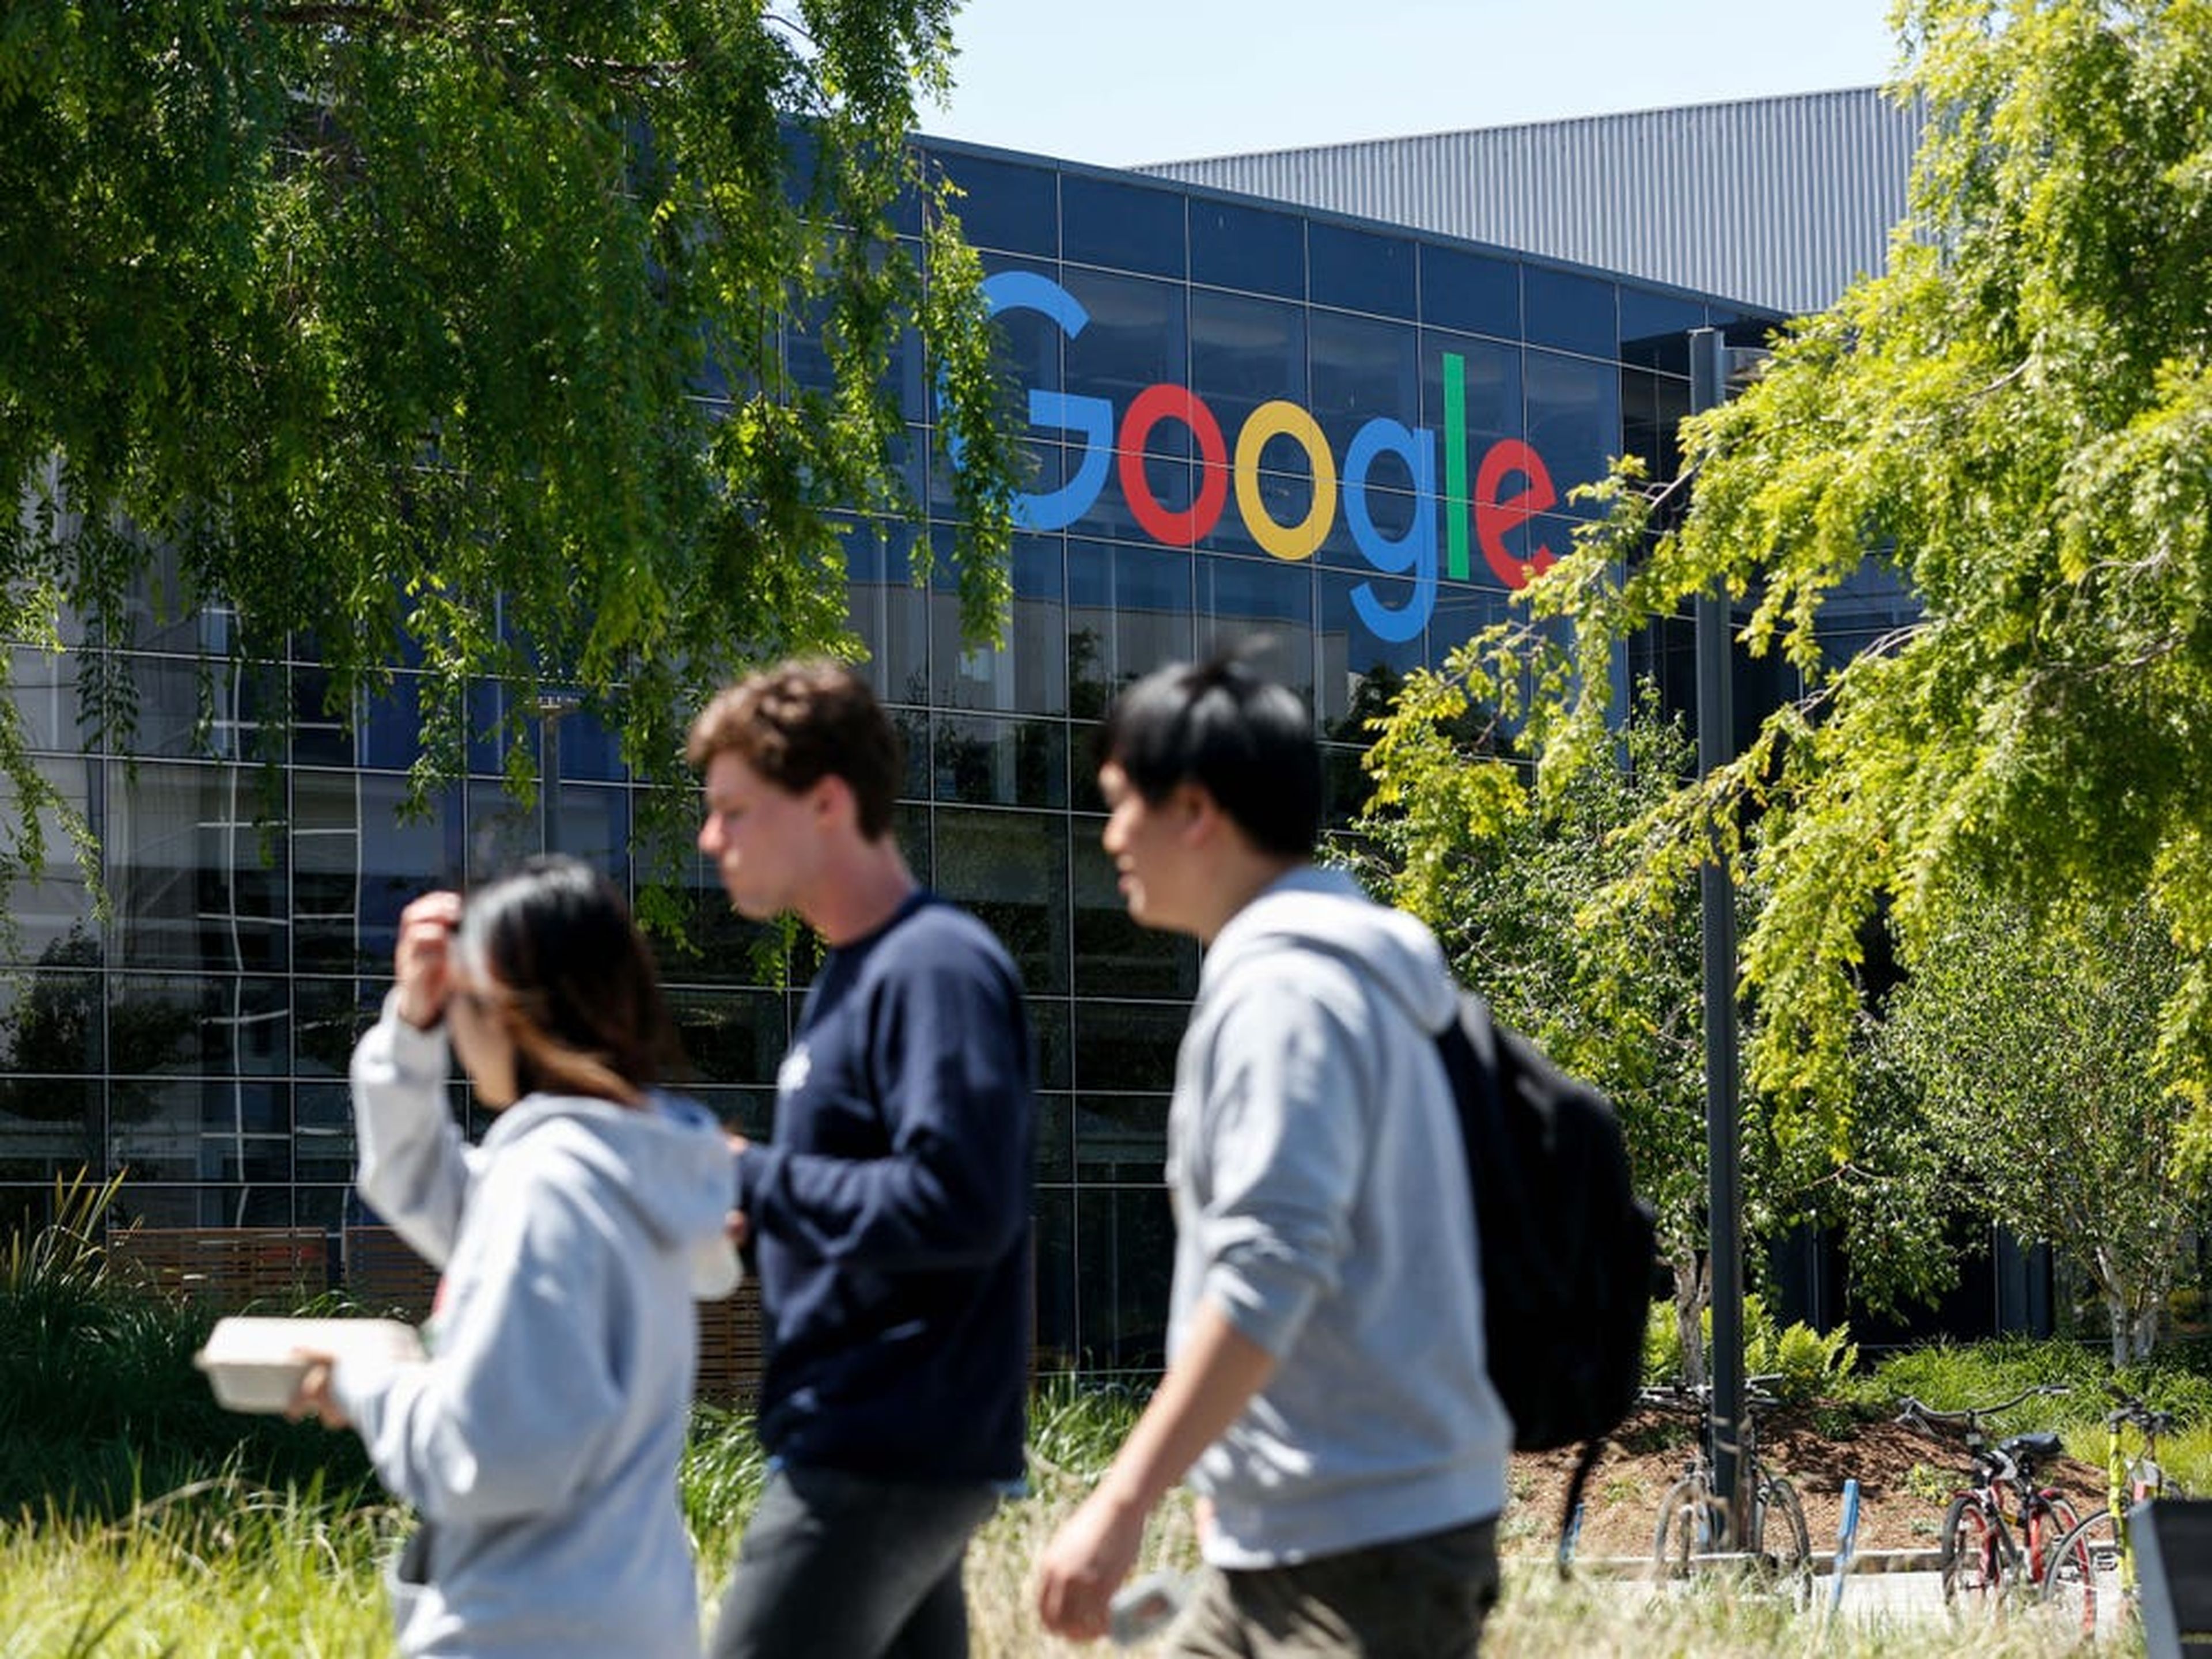 Google dice que tratará sus certificados como el equivalente a un título de 4 años.